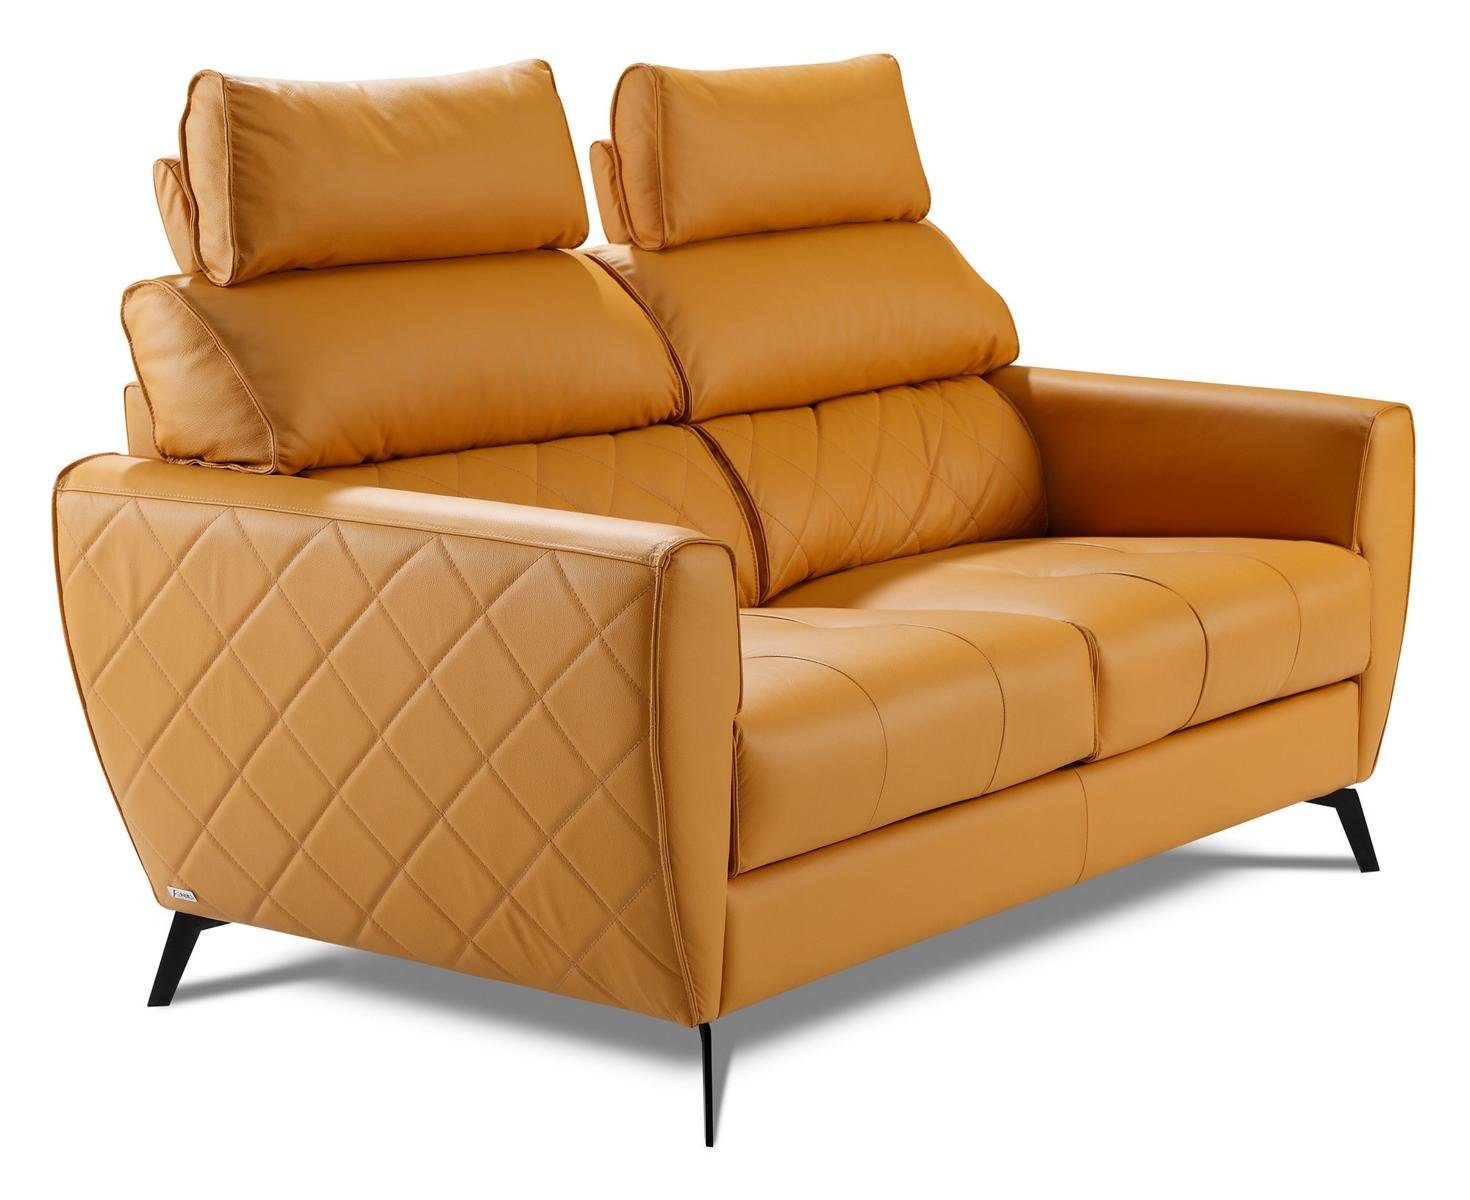 JVmoebel 3-Sitzer Dreisitzer Couch Polster Design Sofa Sitz 3er, Made in Europe Gelb